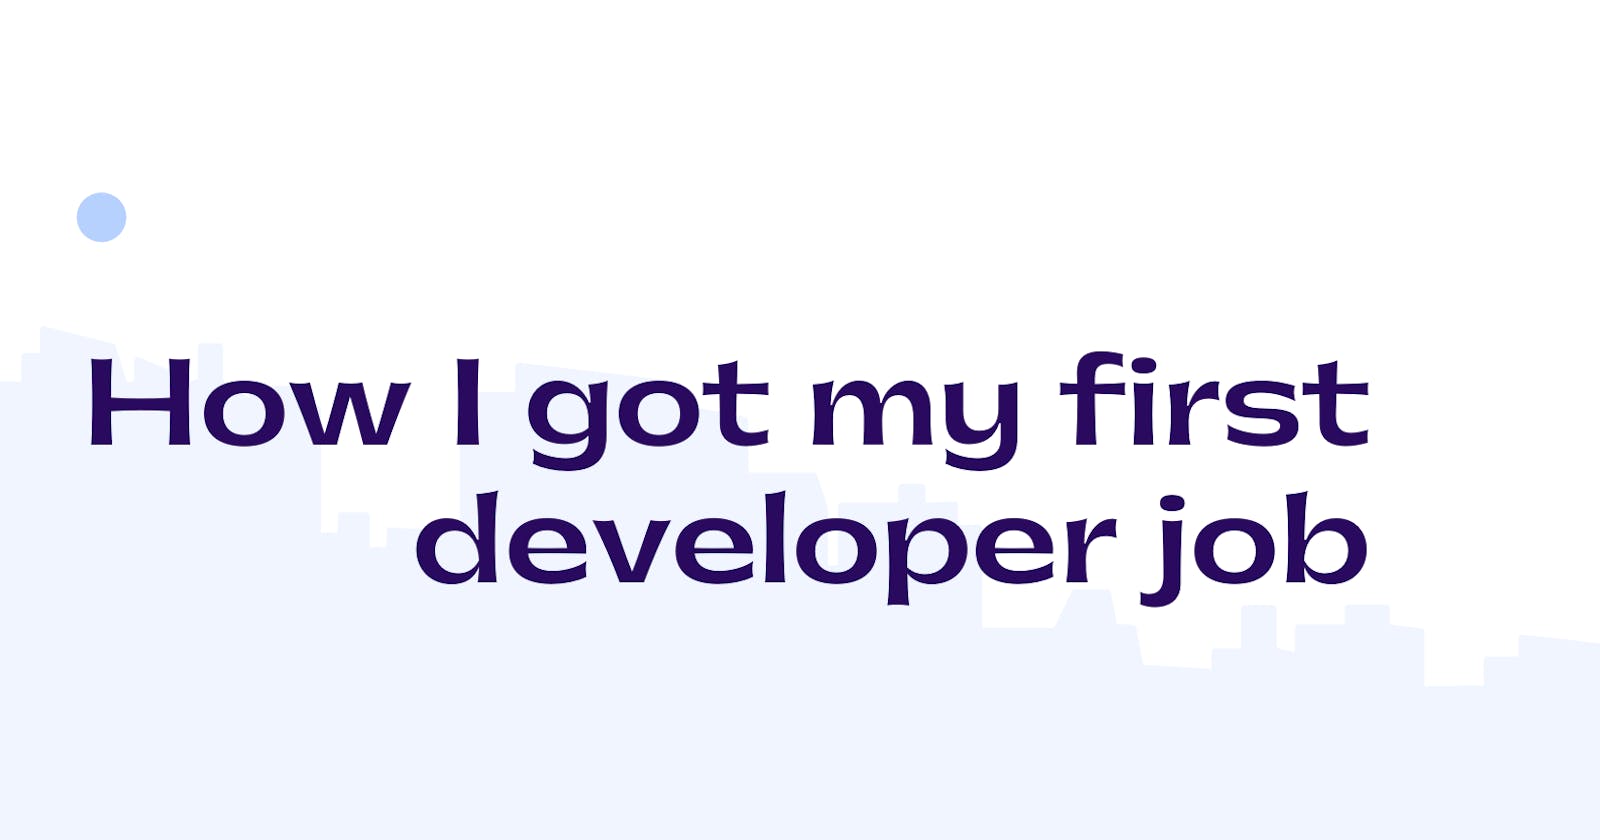 How I got my first developer job